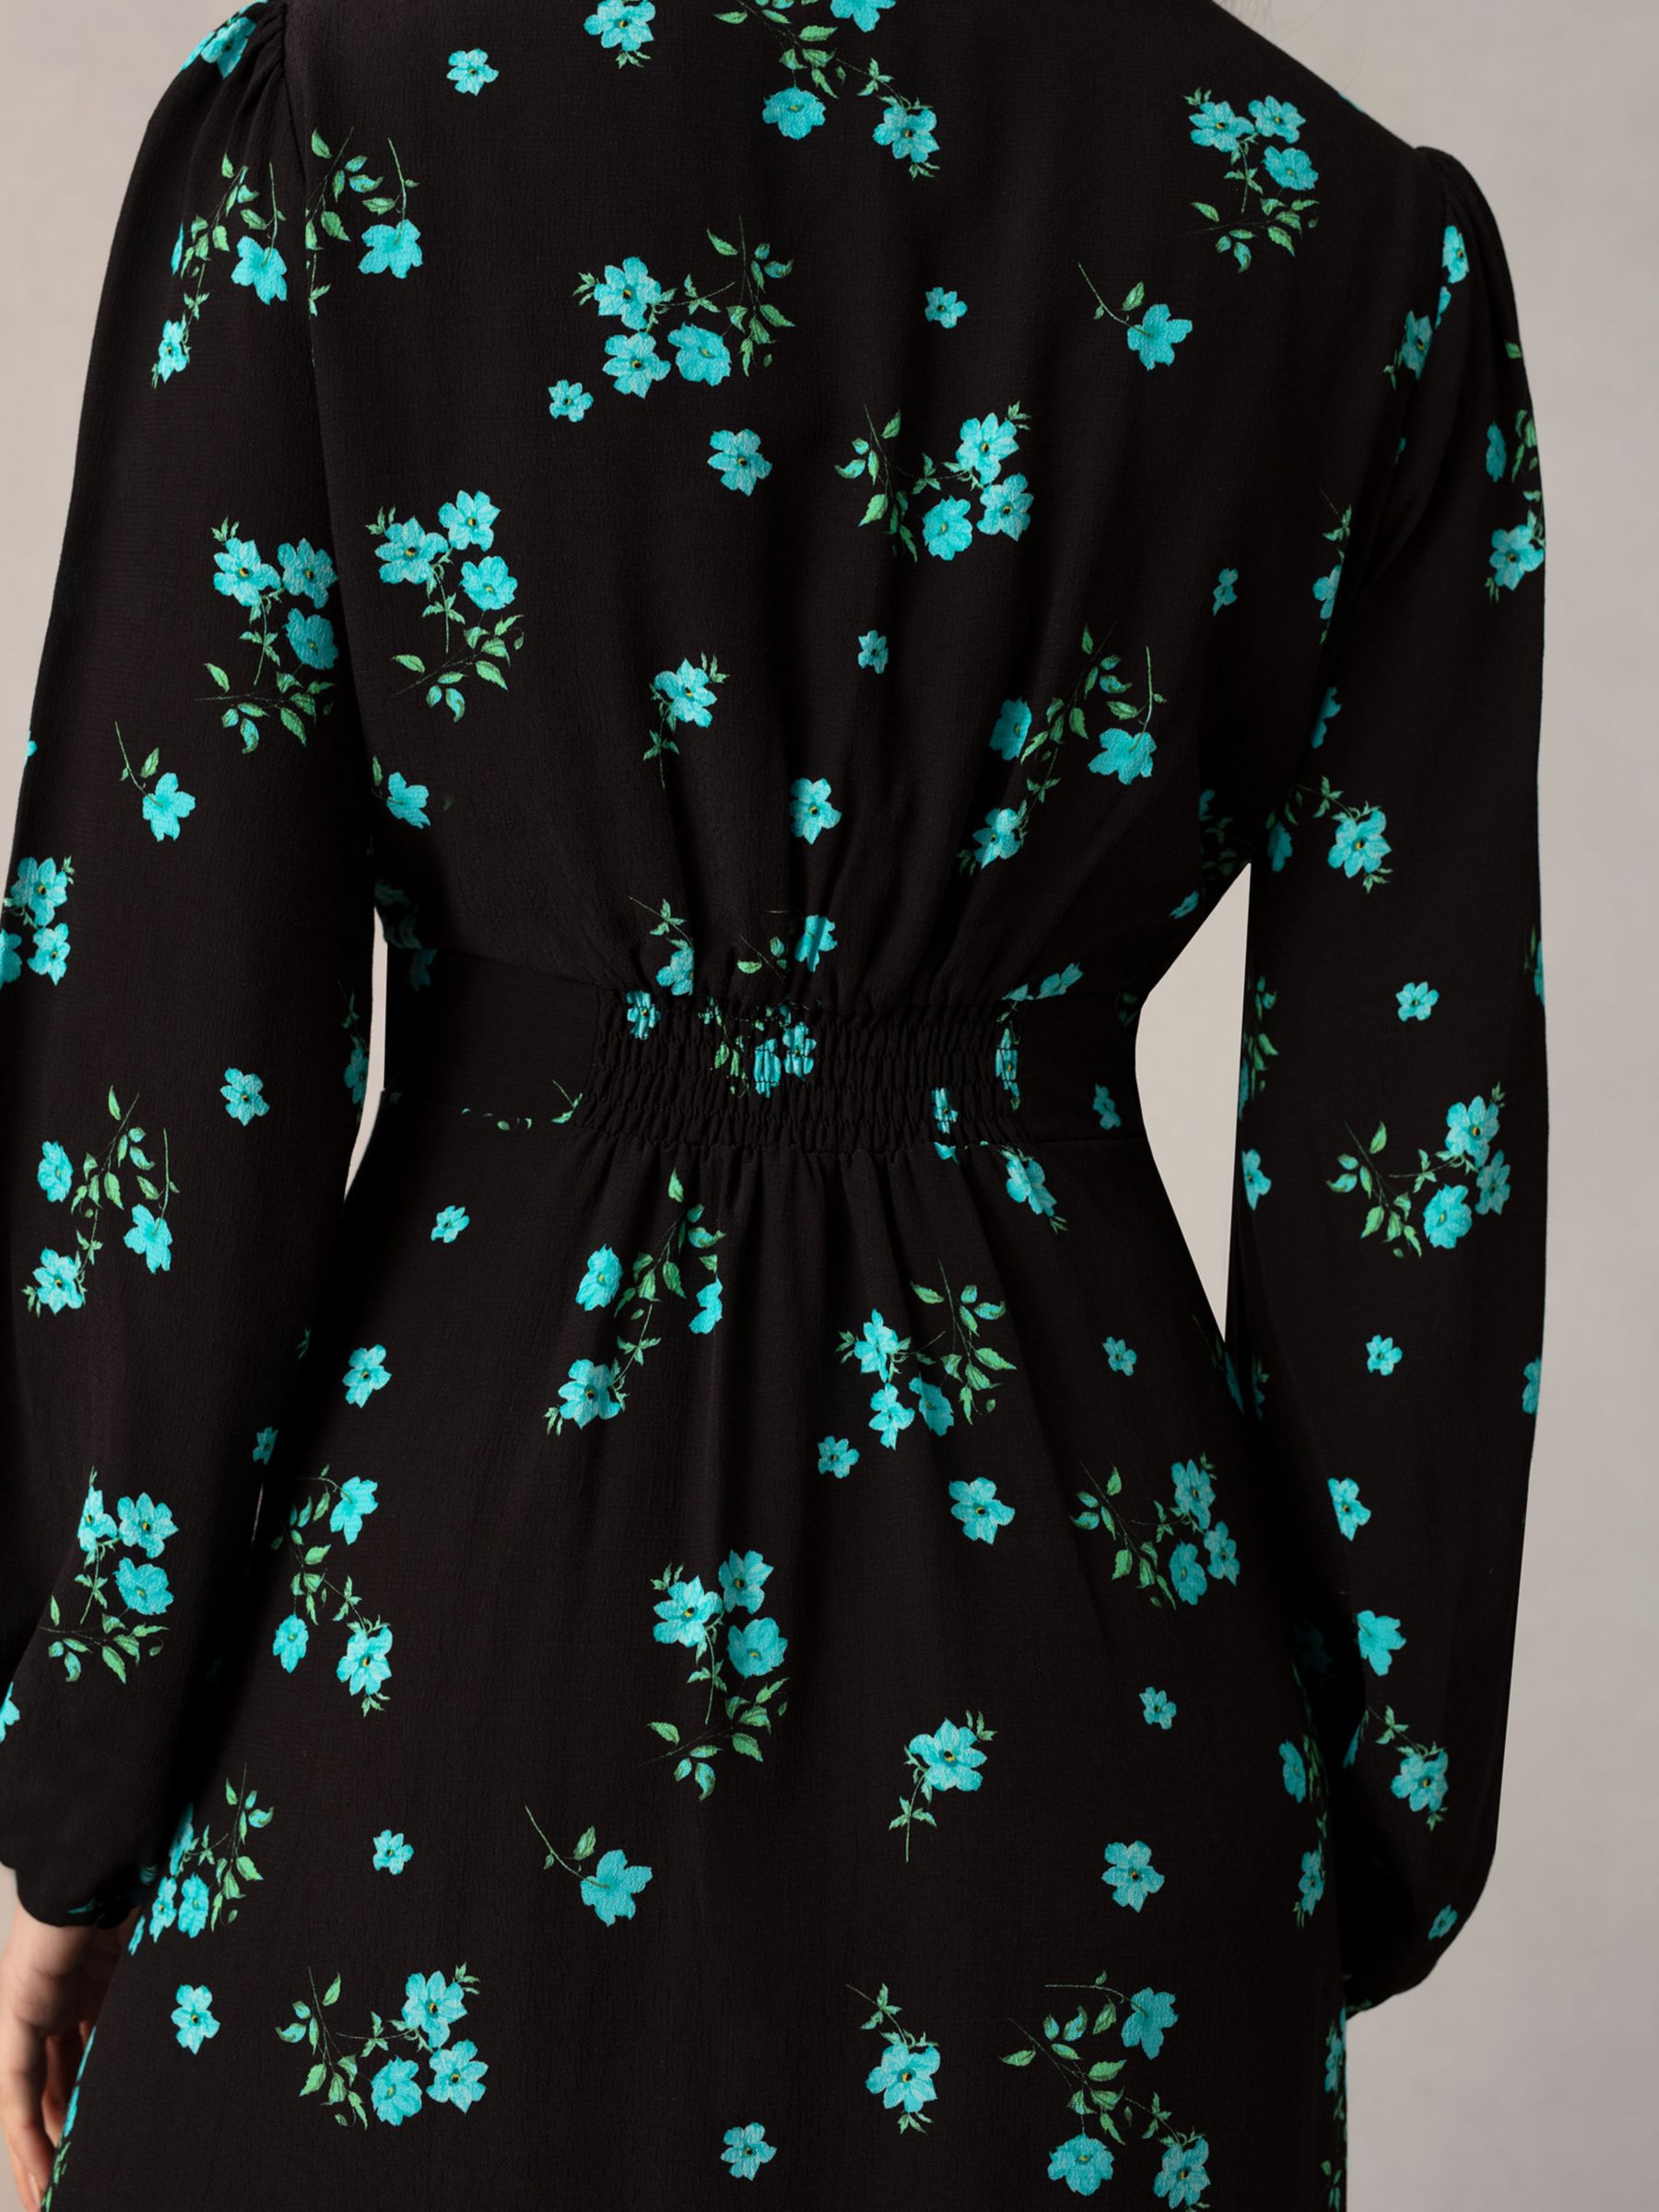 Ro&Zo Floral Cluster Print Midi Dress, Black/Multi, 14